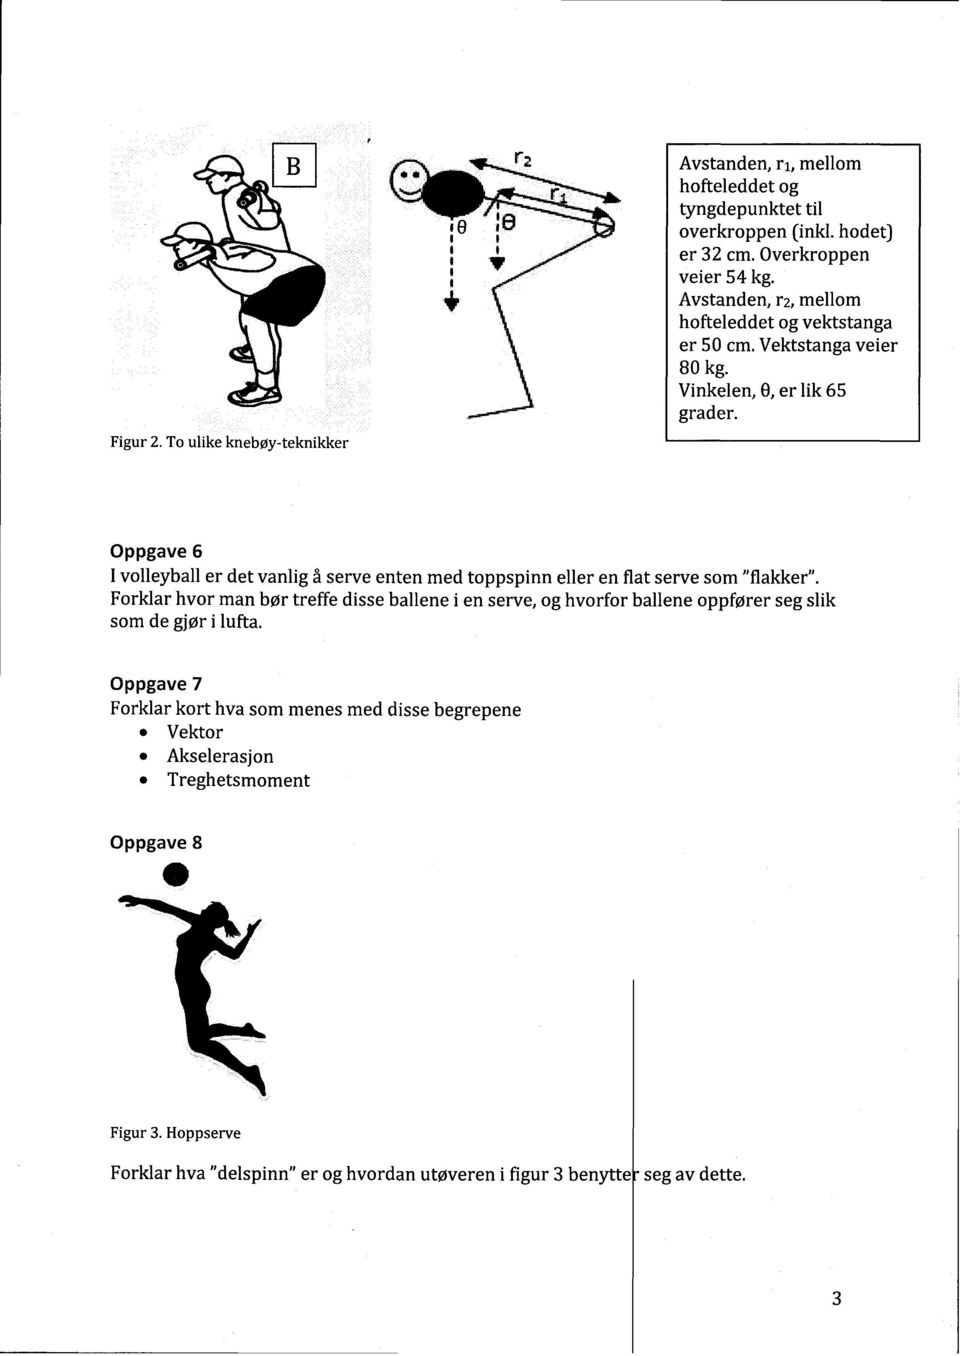 Oppgave 6 I volleyballer det vanligå serveenten medtoppspinnelleren flatservesom"flakker".